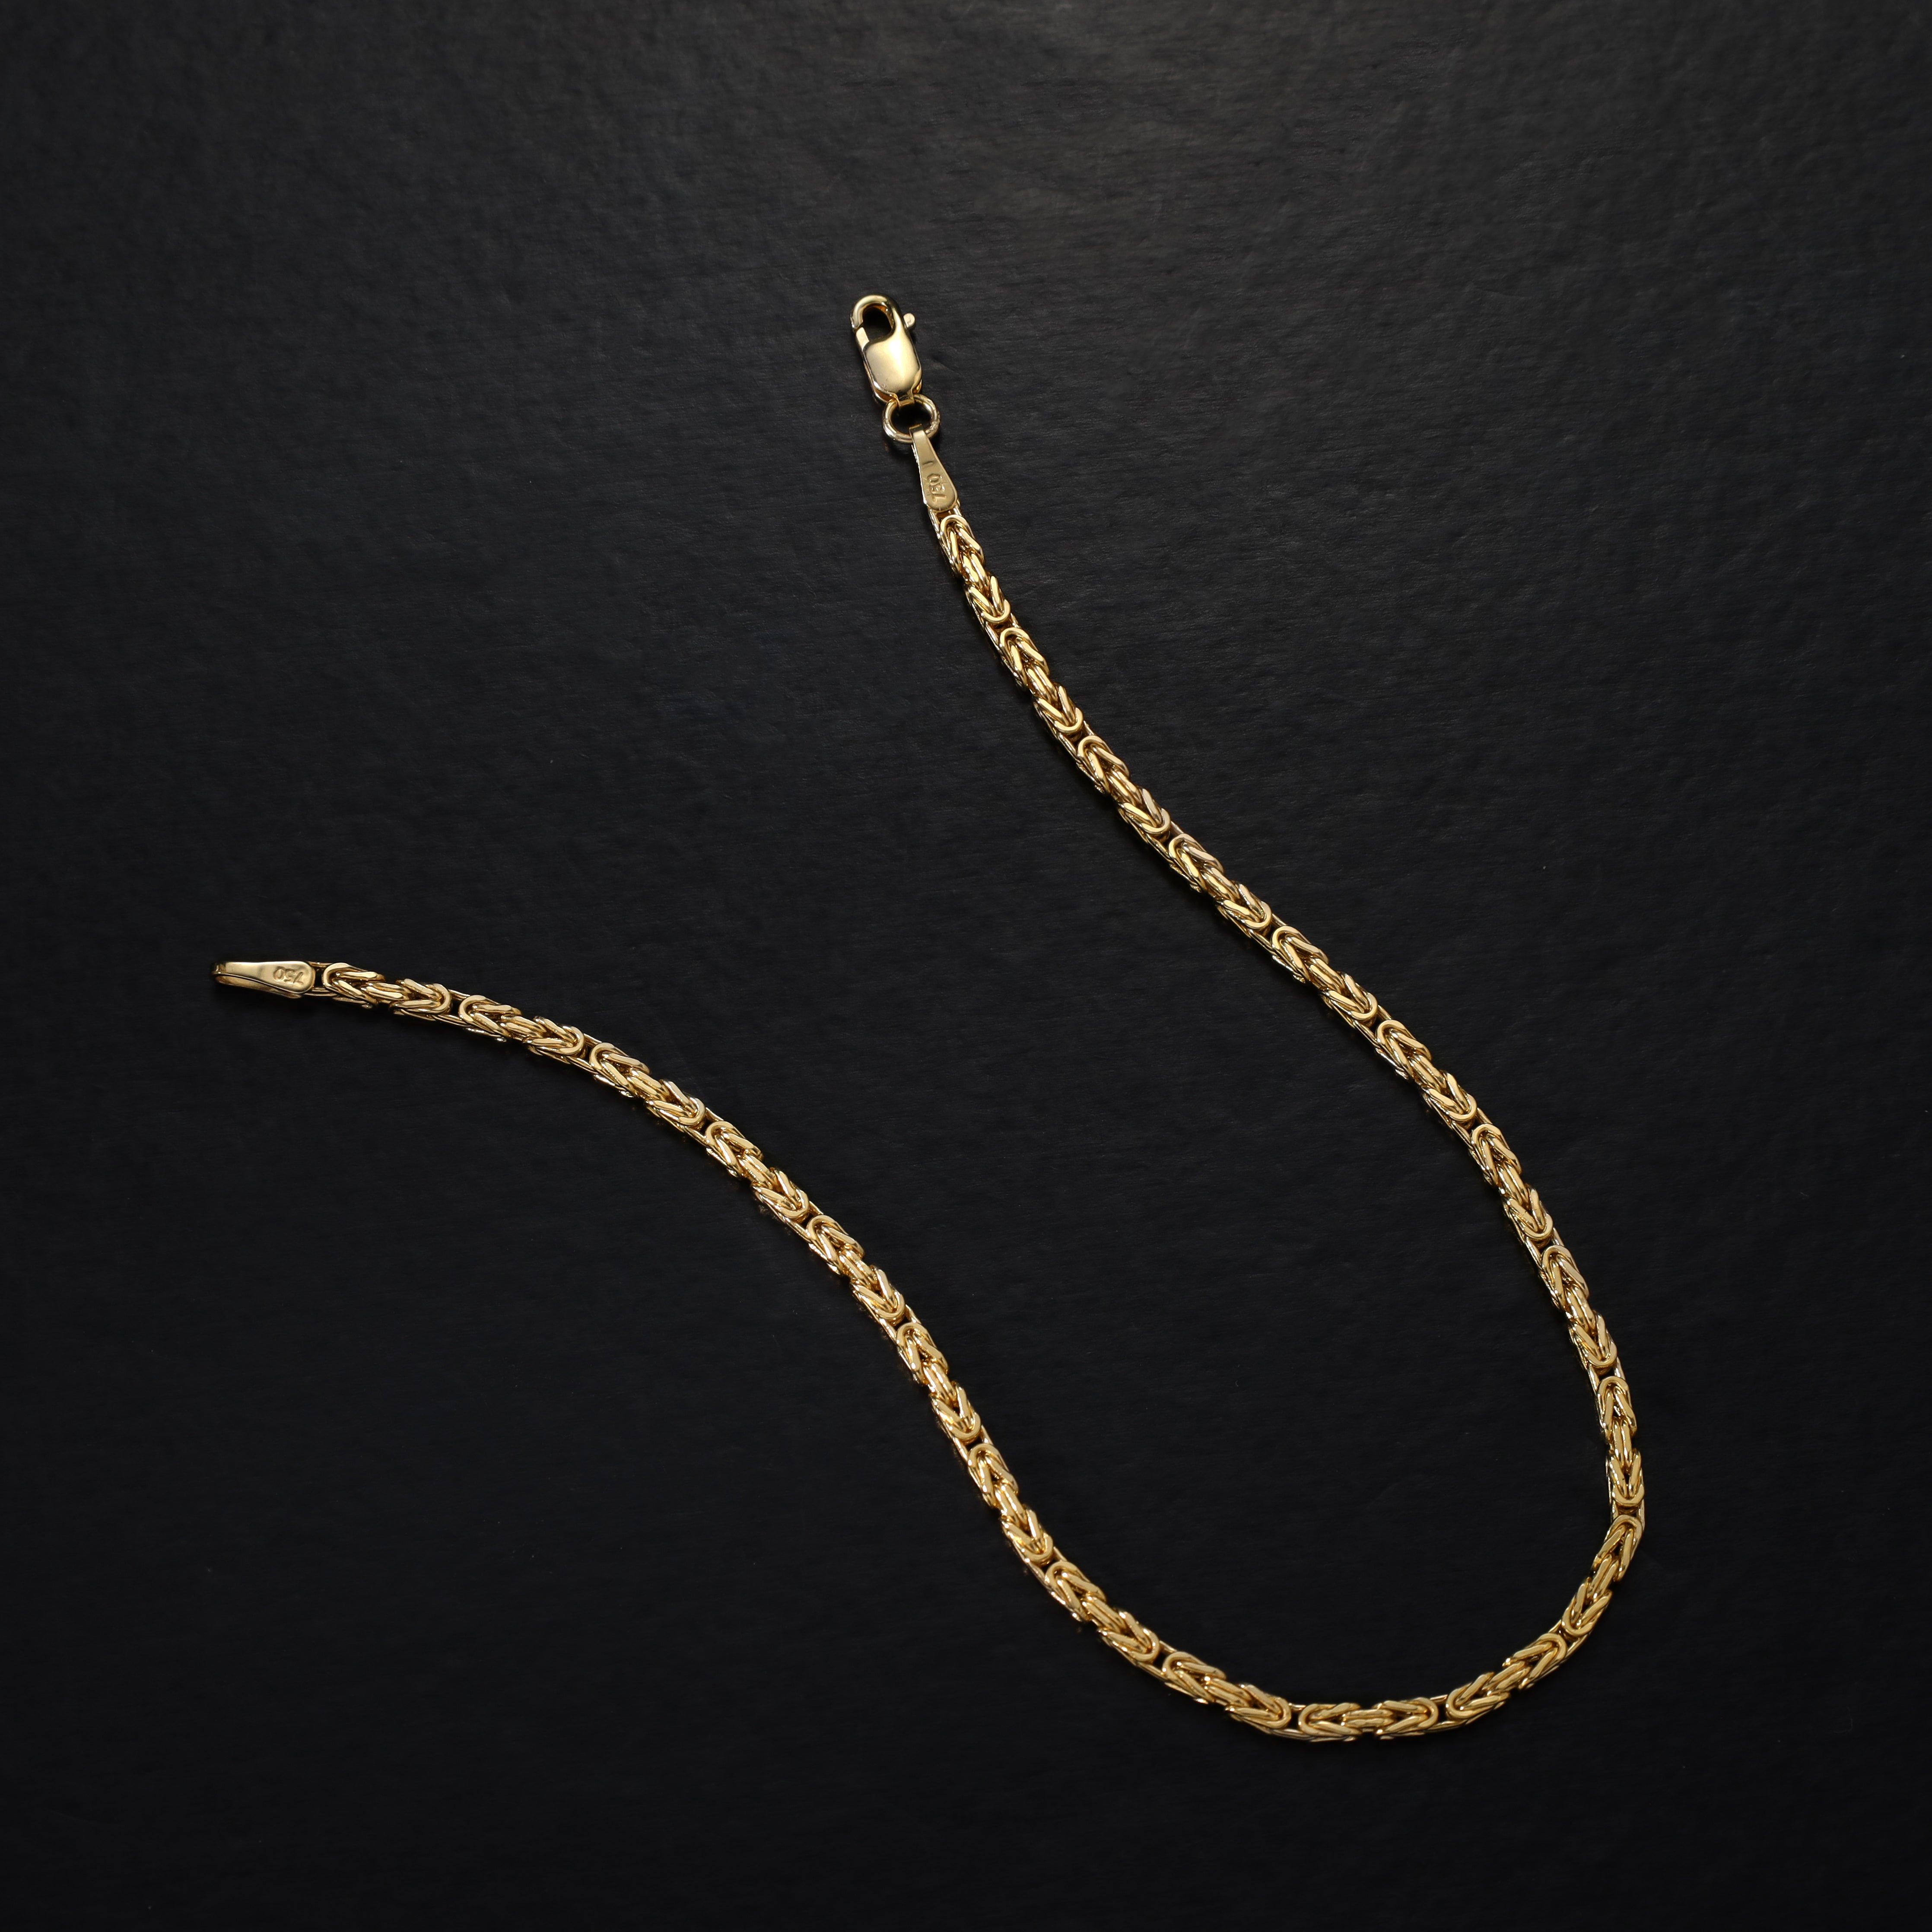 18K 750 Gold Königskette Armband 1,9mm breit 19cm lang - Taipan Schmuck